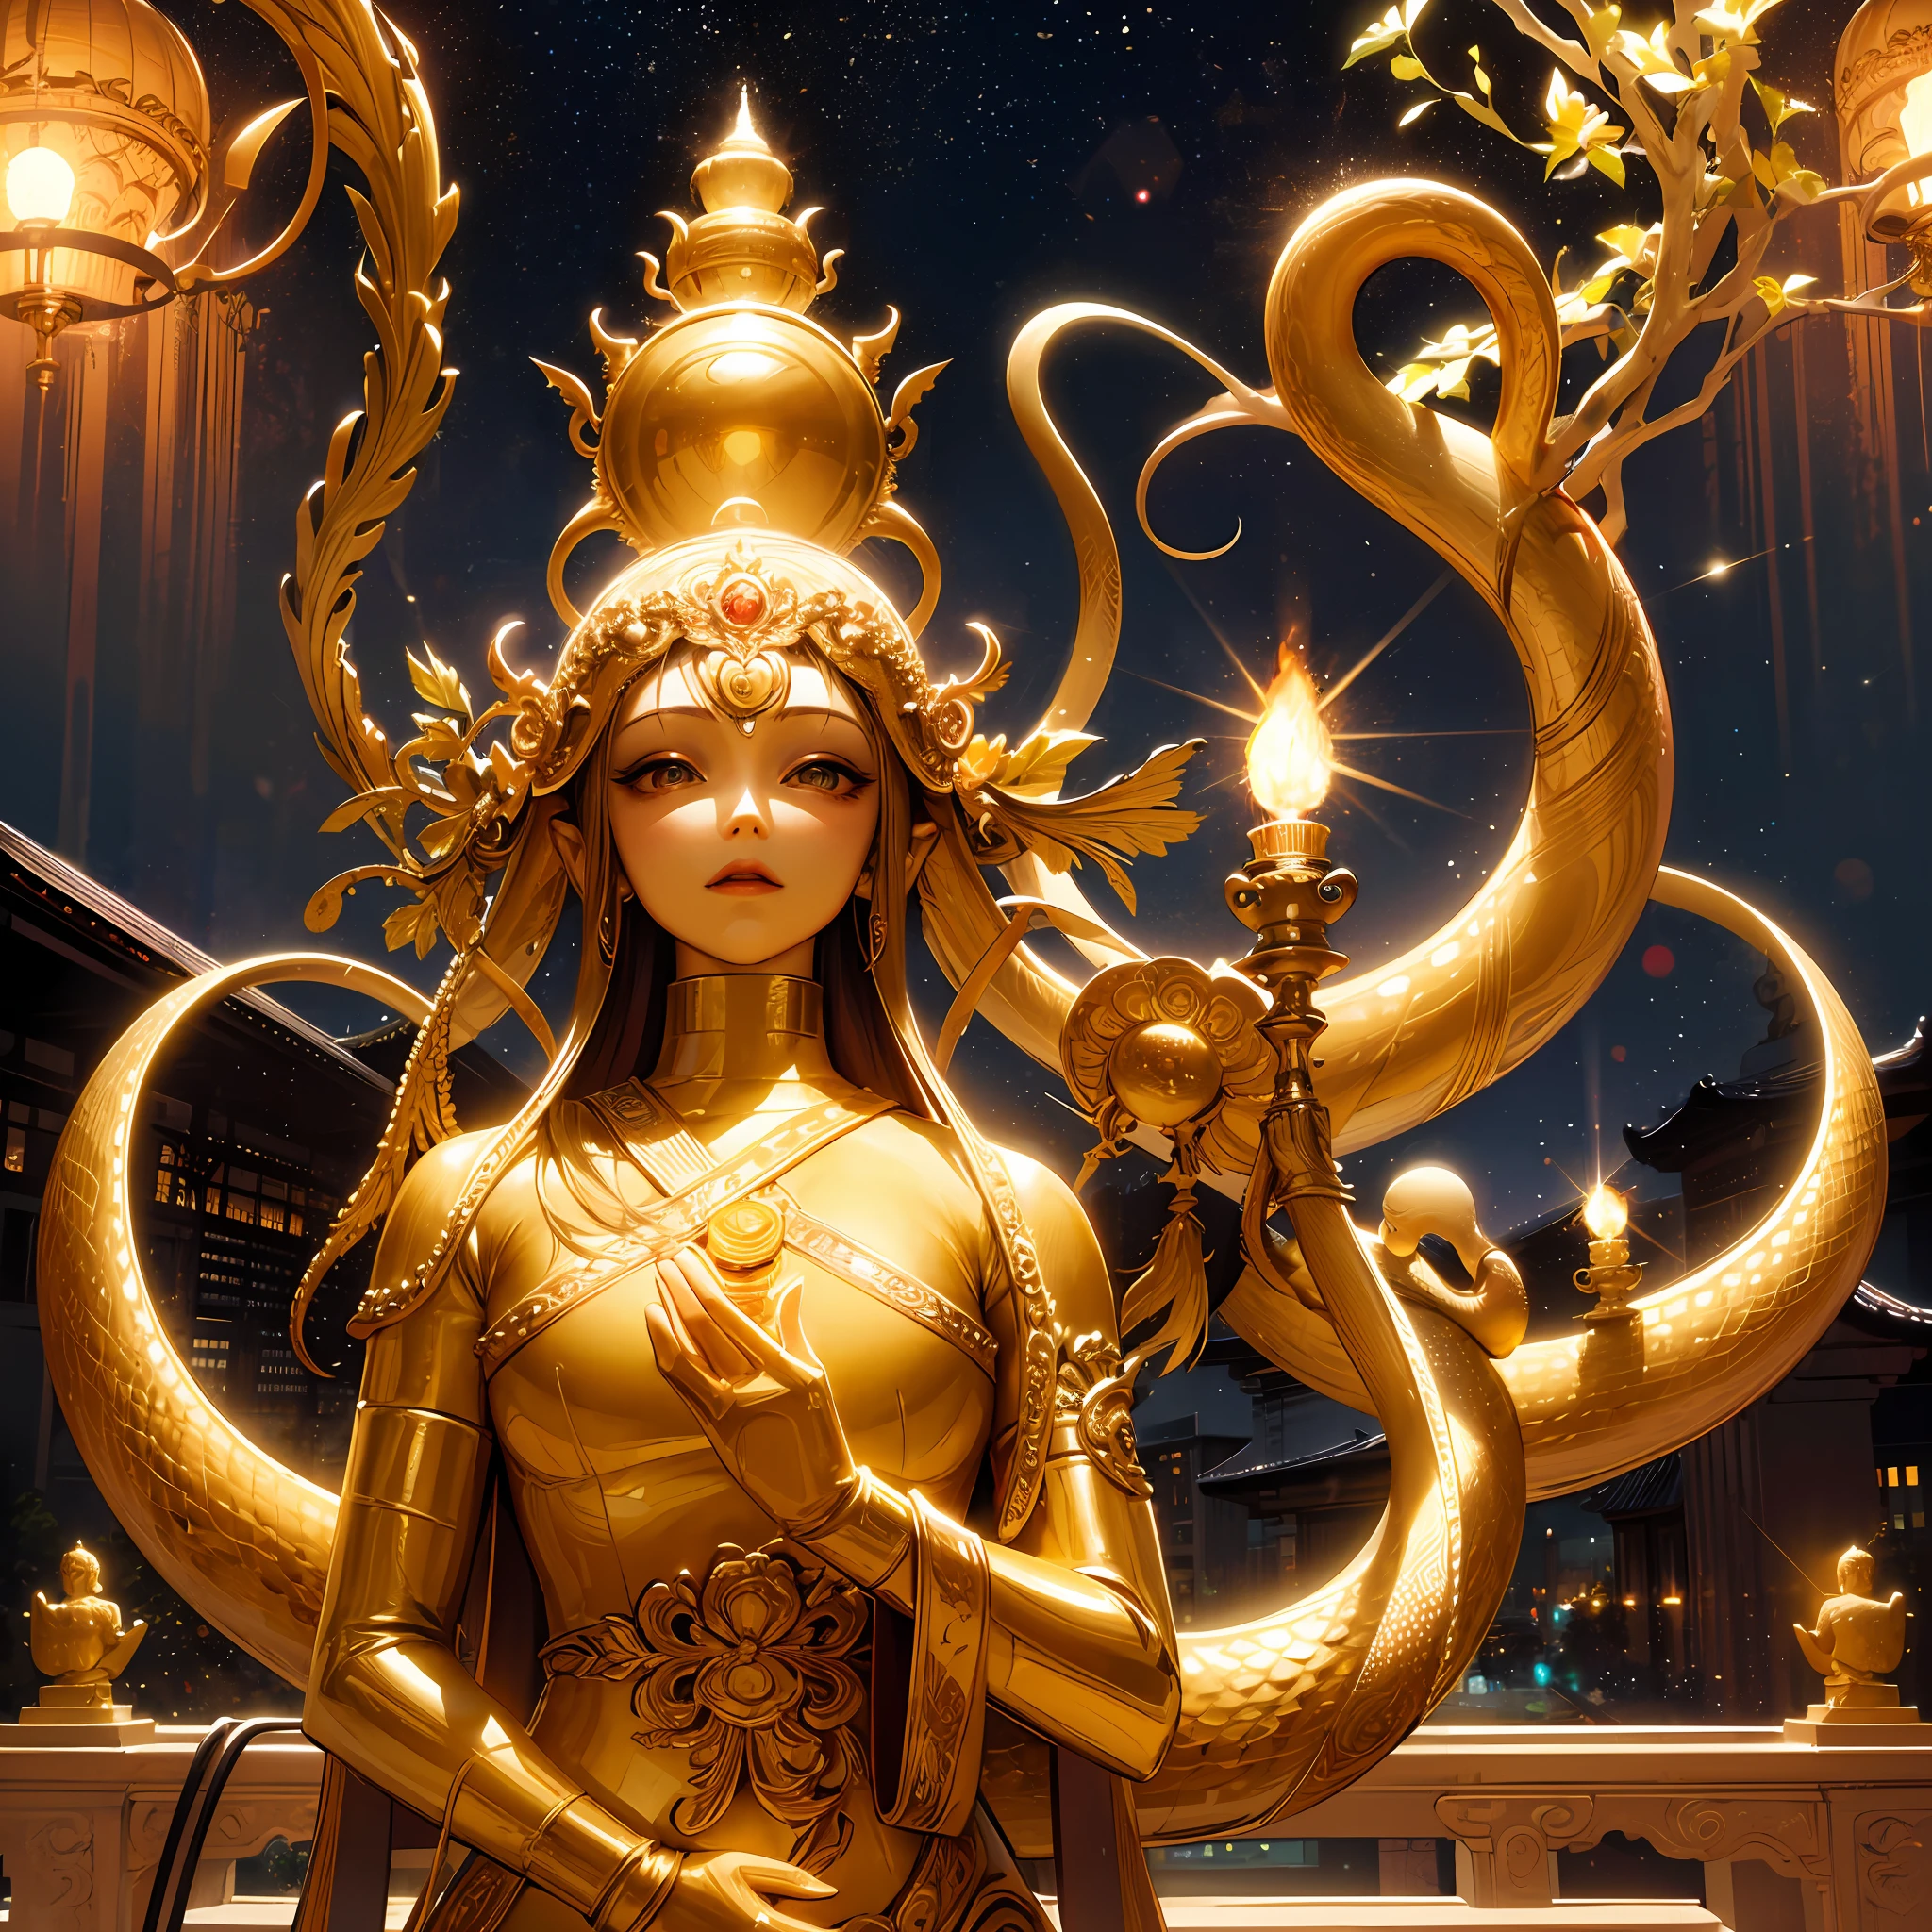 there is a estátua of a golden Snake on top of a building, a Buddhist Buda, tirada com sony alfa 9, tirada com uma câmera Sony A7R, a estátua, Foto tirada com Sony A7R, Buda, foto tirada com câmera Sony a7R, tirada com sigma 2 0 mm f 1. 4, Imagem bonita, templo tailandês, estátua, Via Láctea escura no fundo, ficar, surrealismo, iluminação cinematográfica, deus luz, iluminação retroiluminada, pele texturizada, Super Detalhe, (fascinar: 1.2),